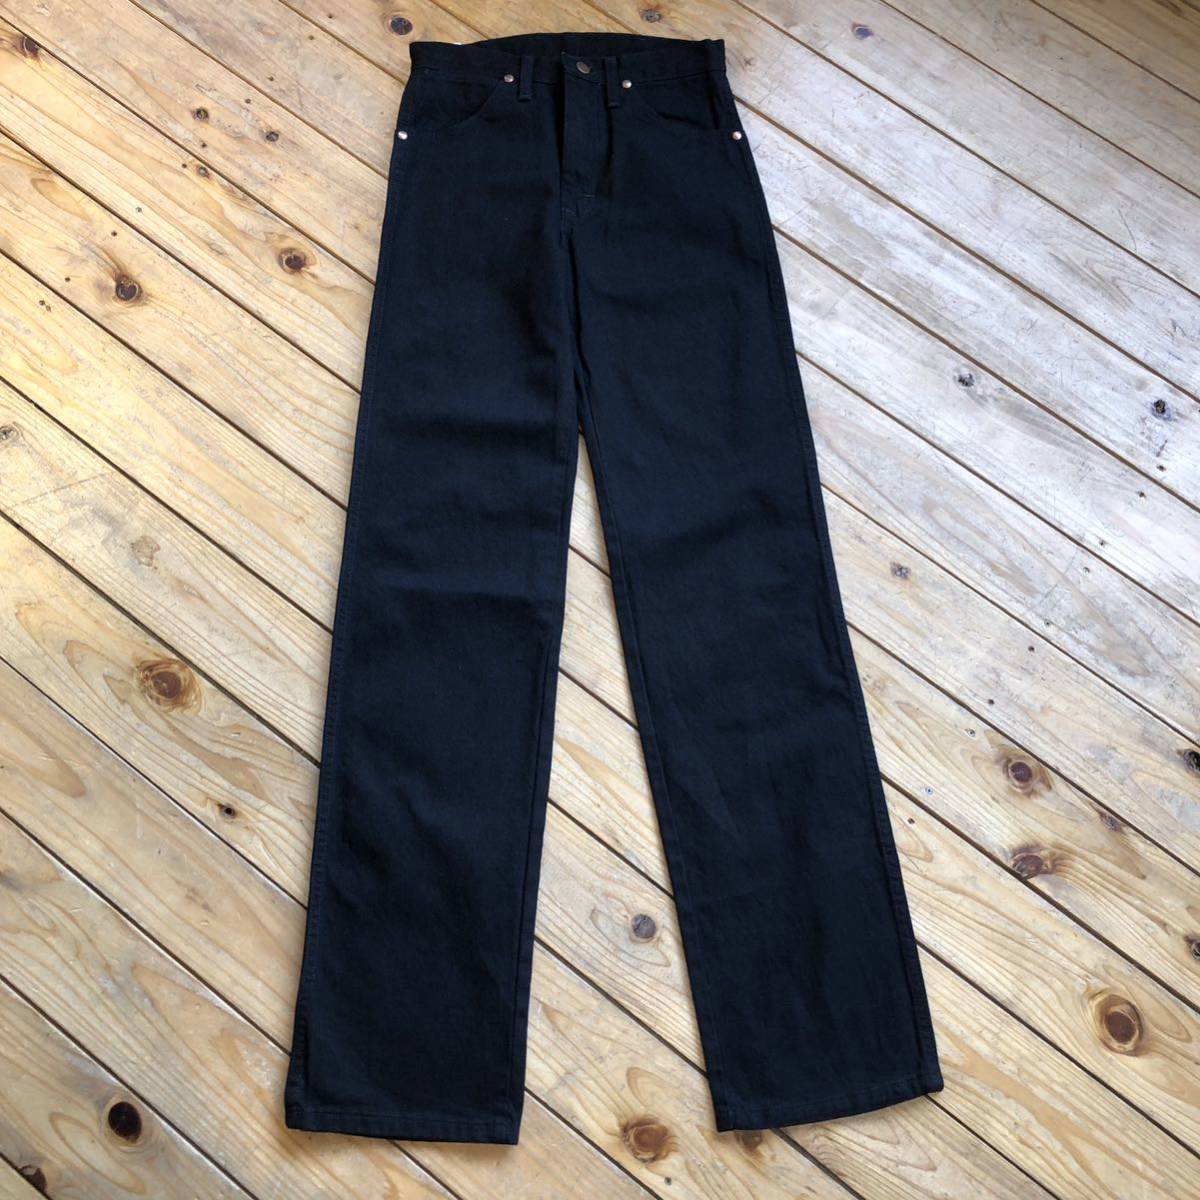  новый товар неиспользуемый товар Wrangler Wrangler Denim брюки мужской W27 L34kaubo- ikatto Rodeo черный с биркой не использовался товар P0761